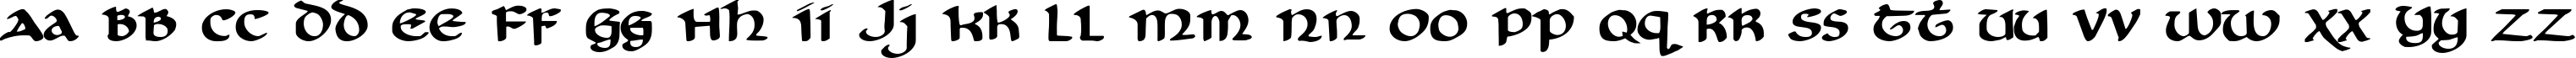 Пример написания английского алфавита шрифтом Cry Uncial